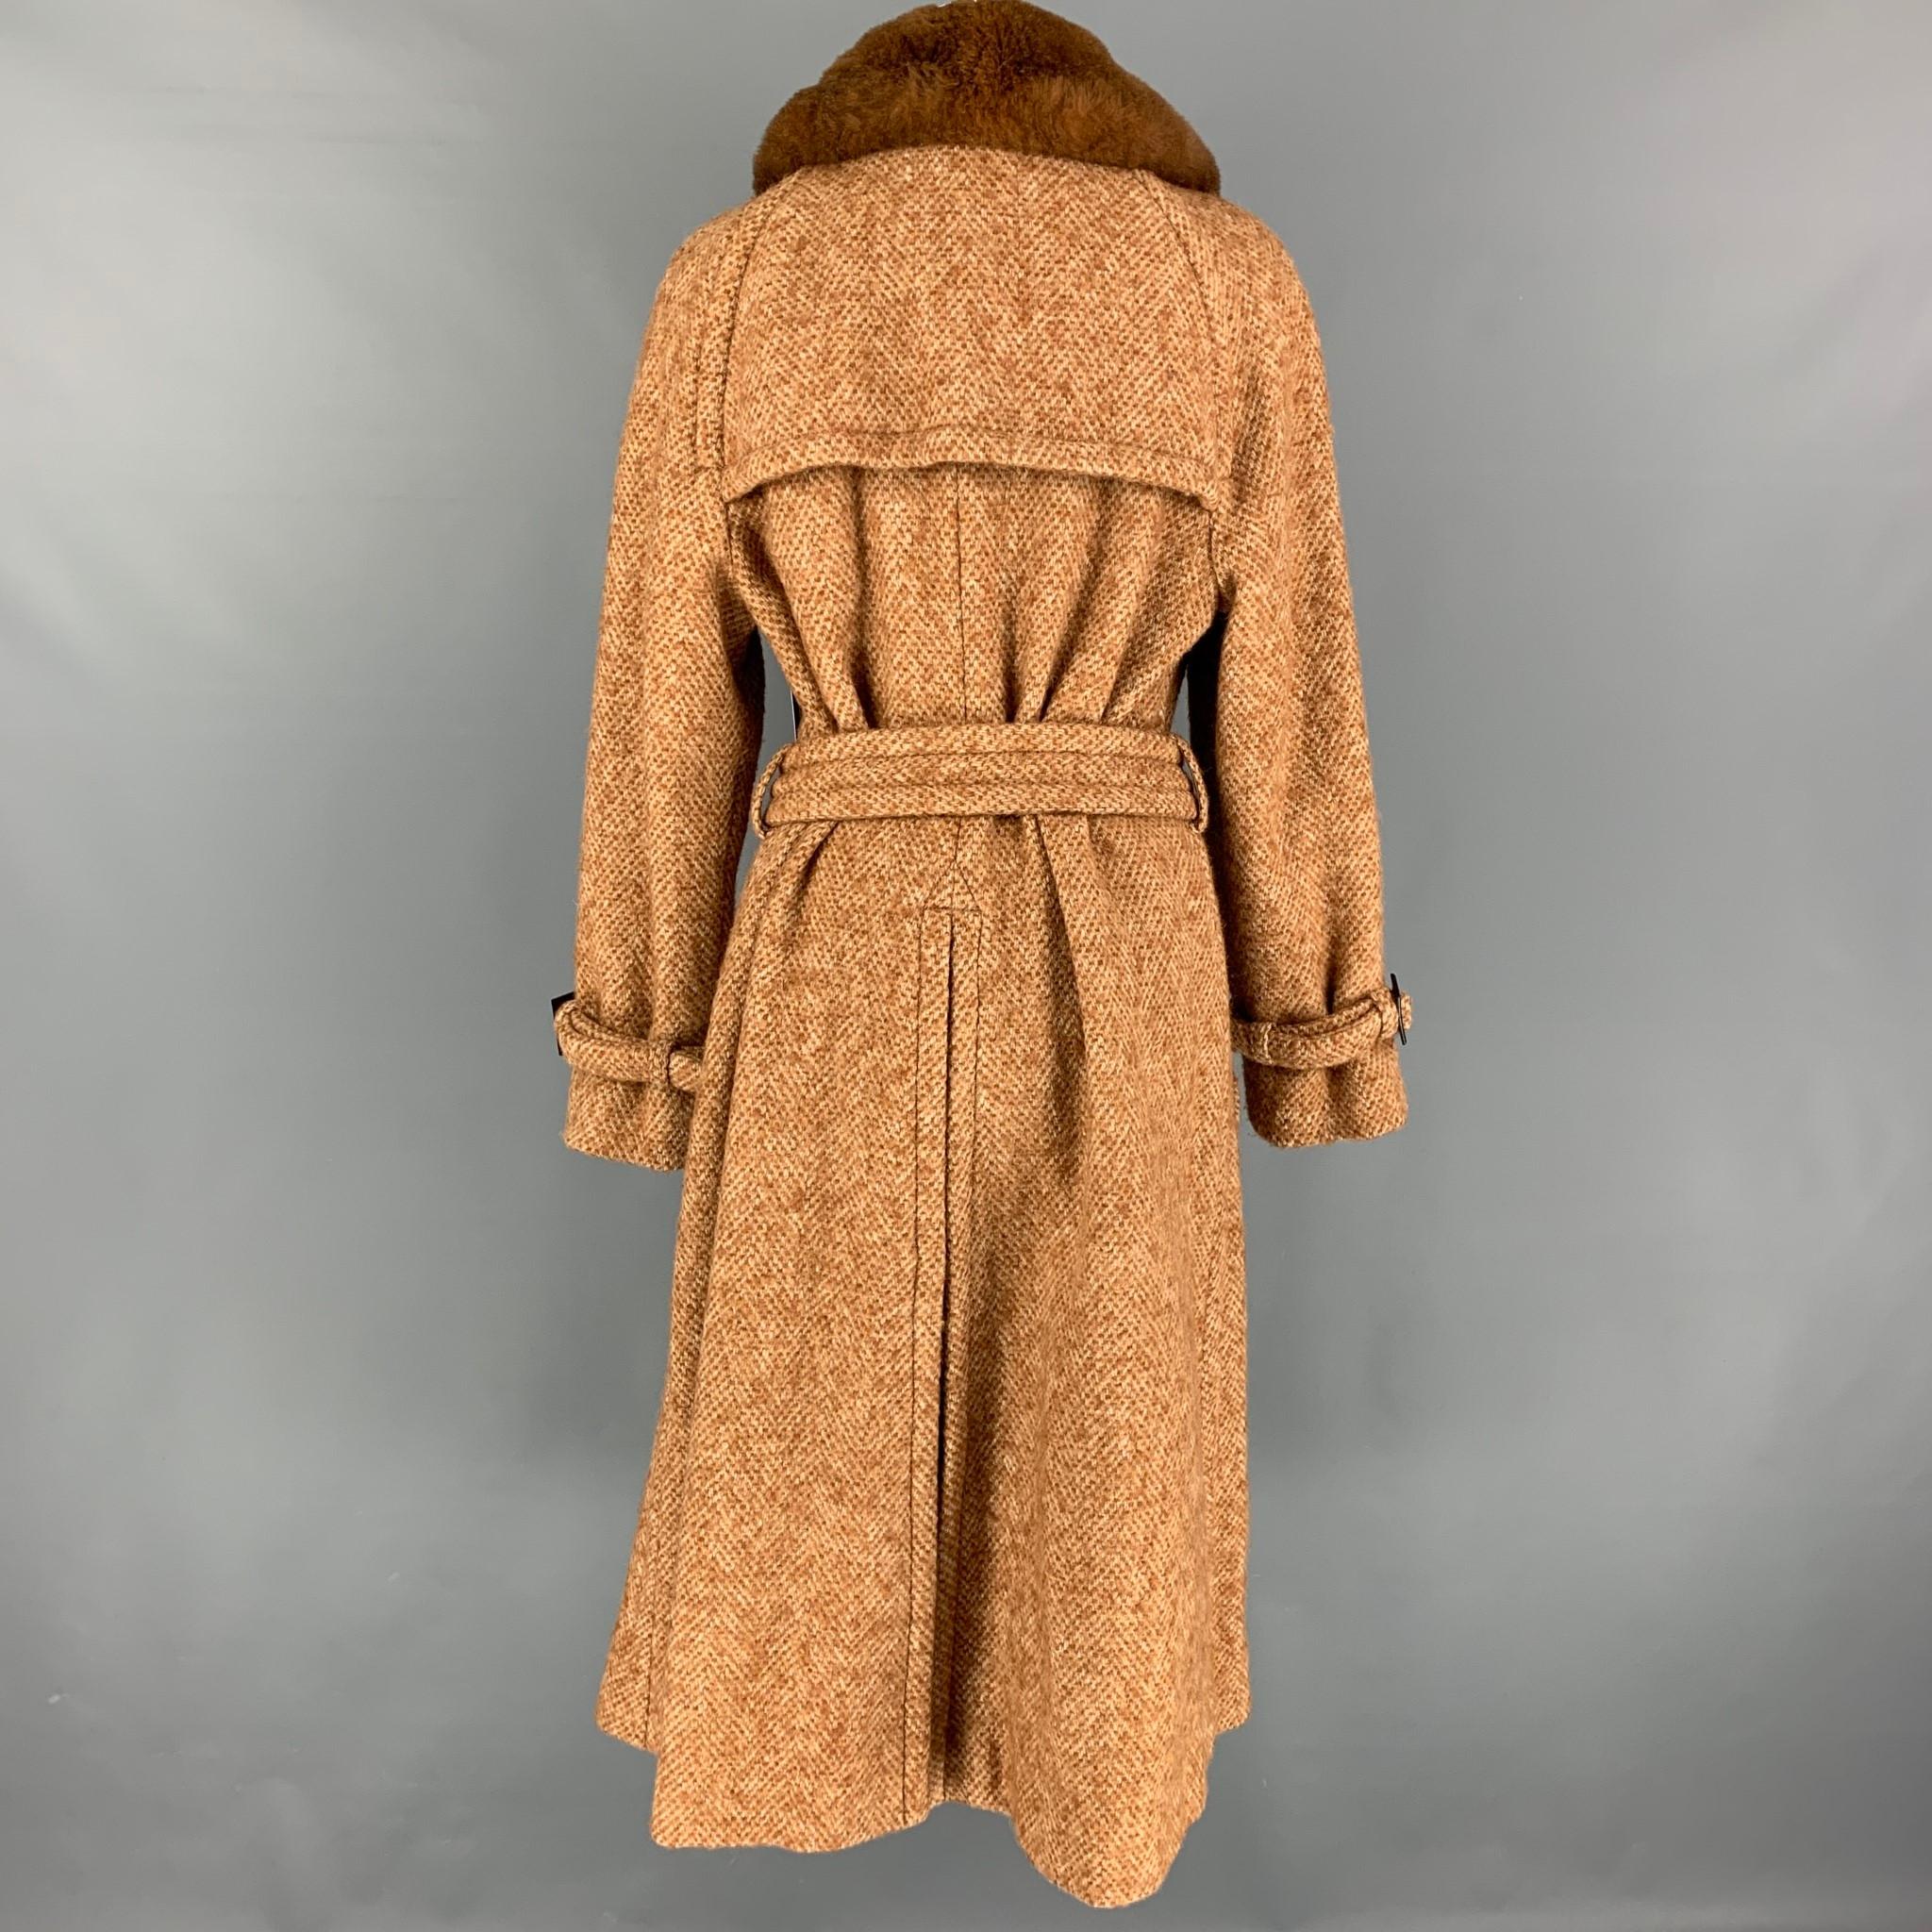 MARC JACOBS - Manteau ceinturé en tweed mélangé de laine beige et brun clair, taille 12 Excellent état à San Francisco, CA